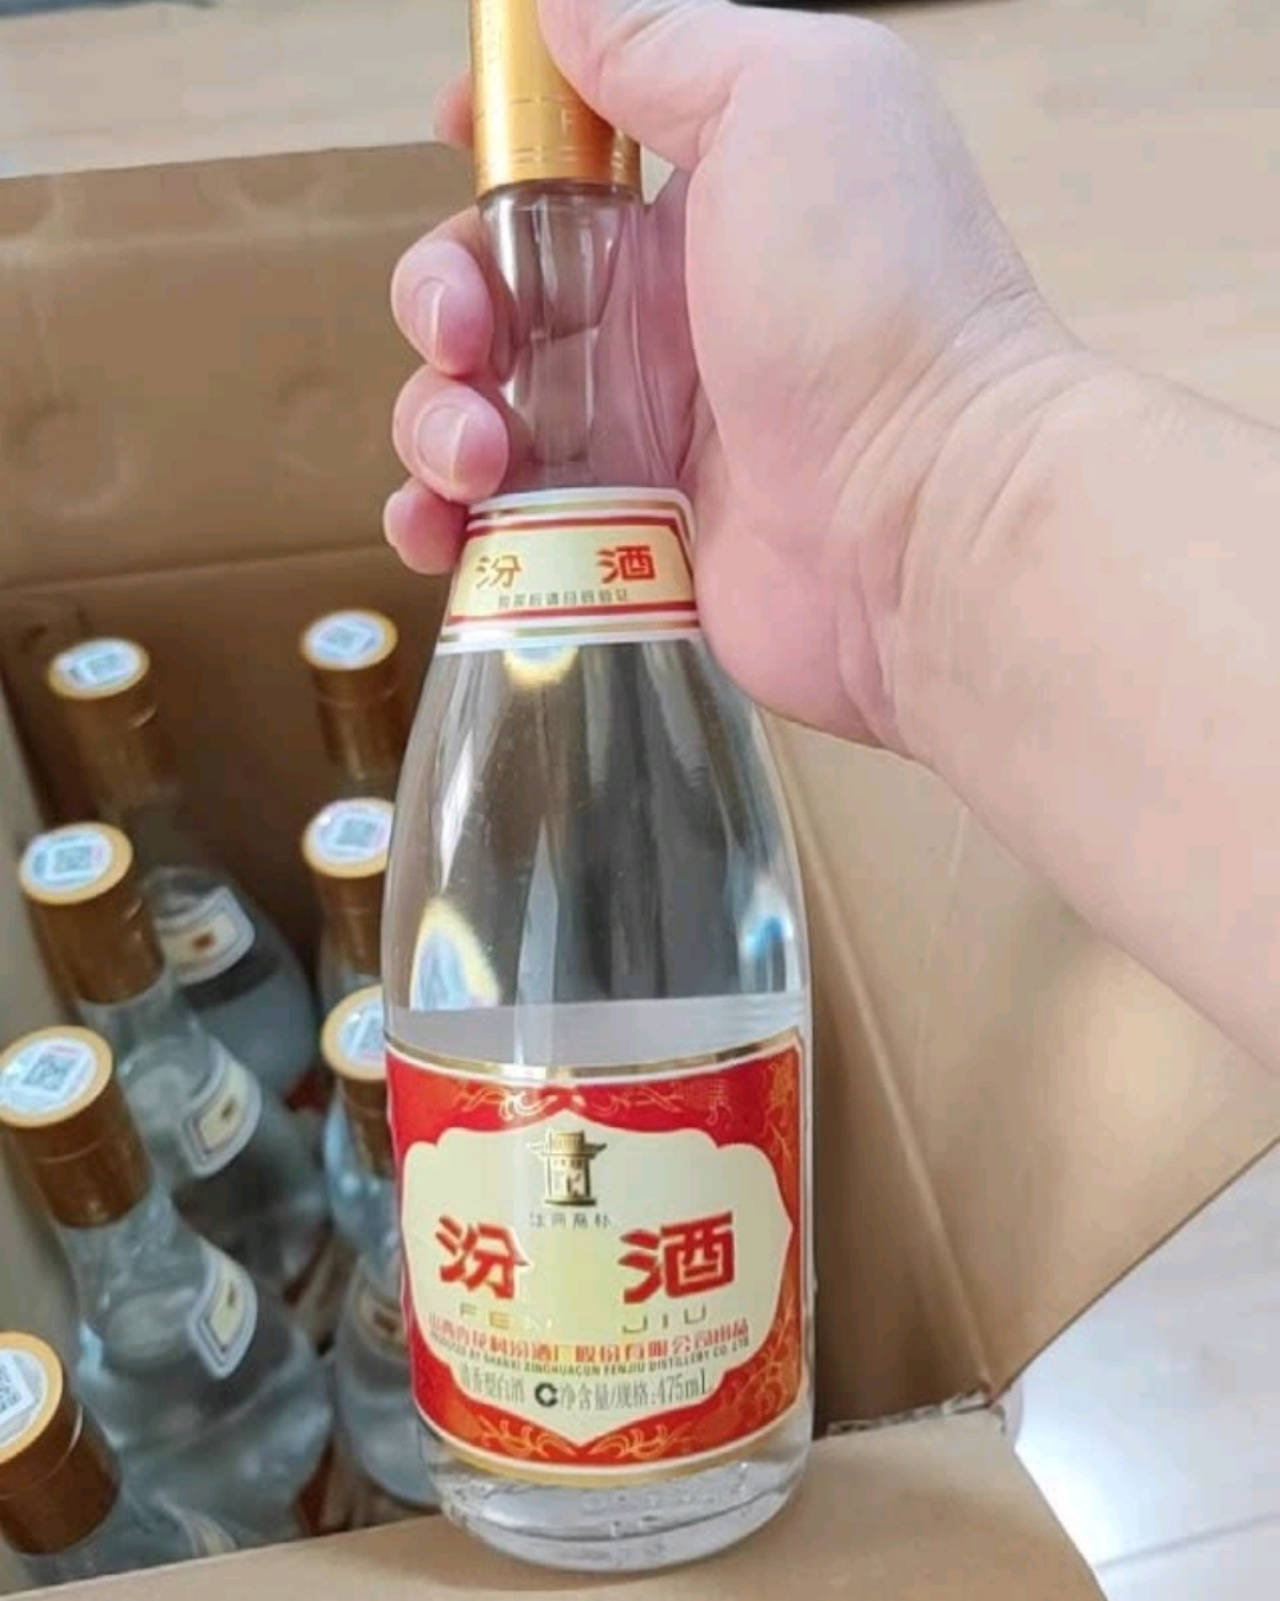 黄盖玻汾:全国销量第一的汾酒单品,在低价酒,光瓶酒中的知名度和认可